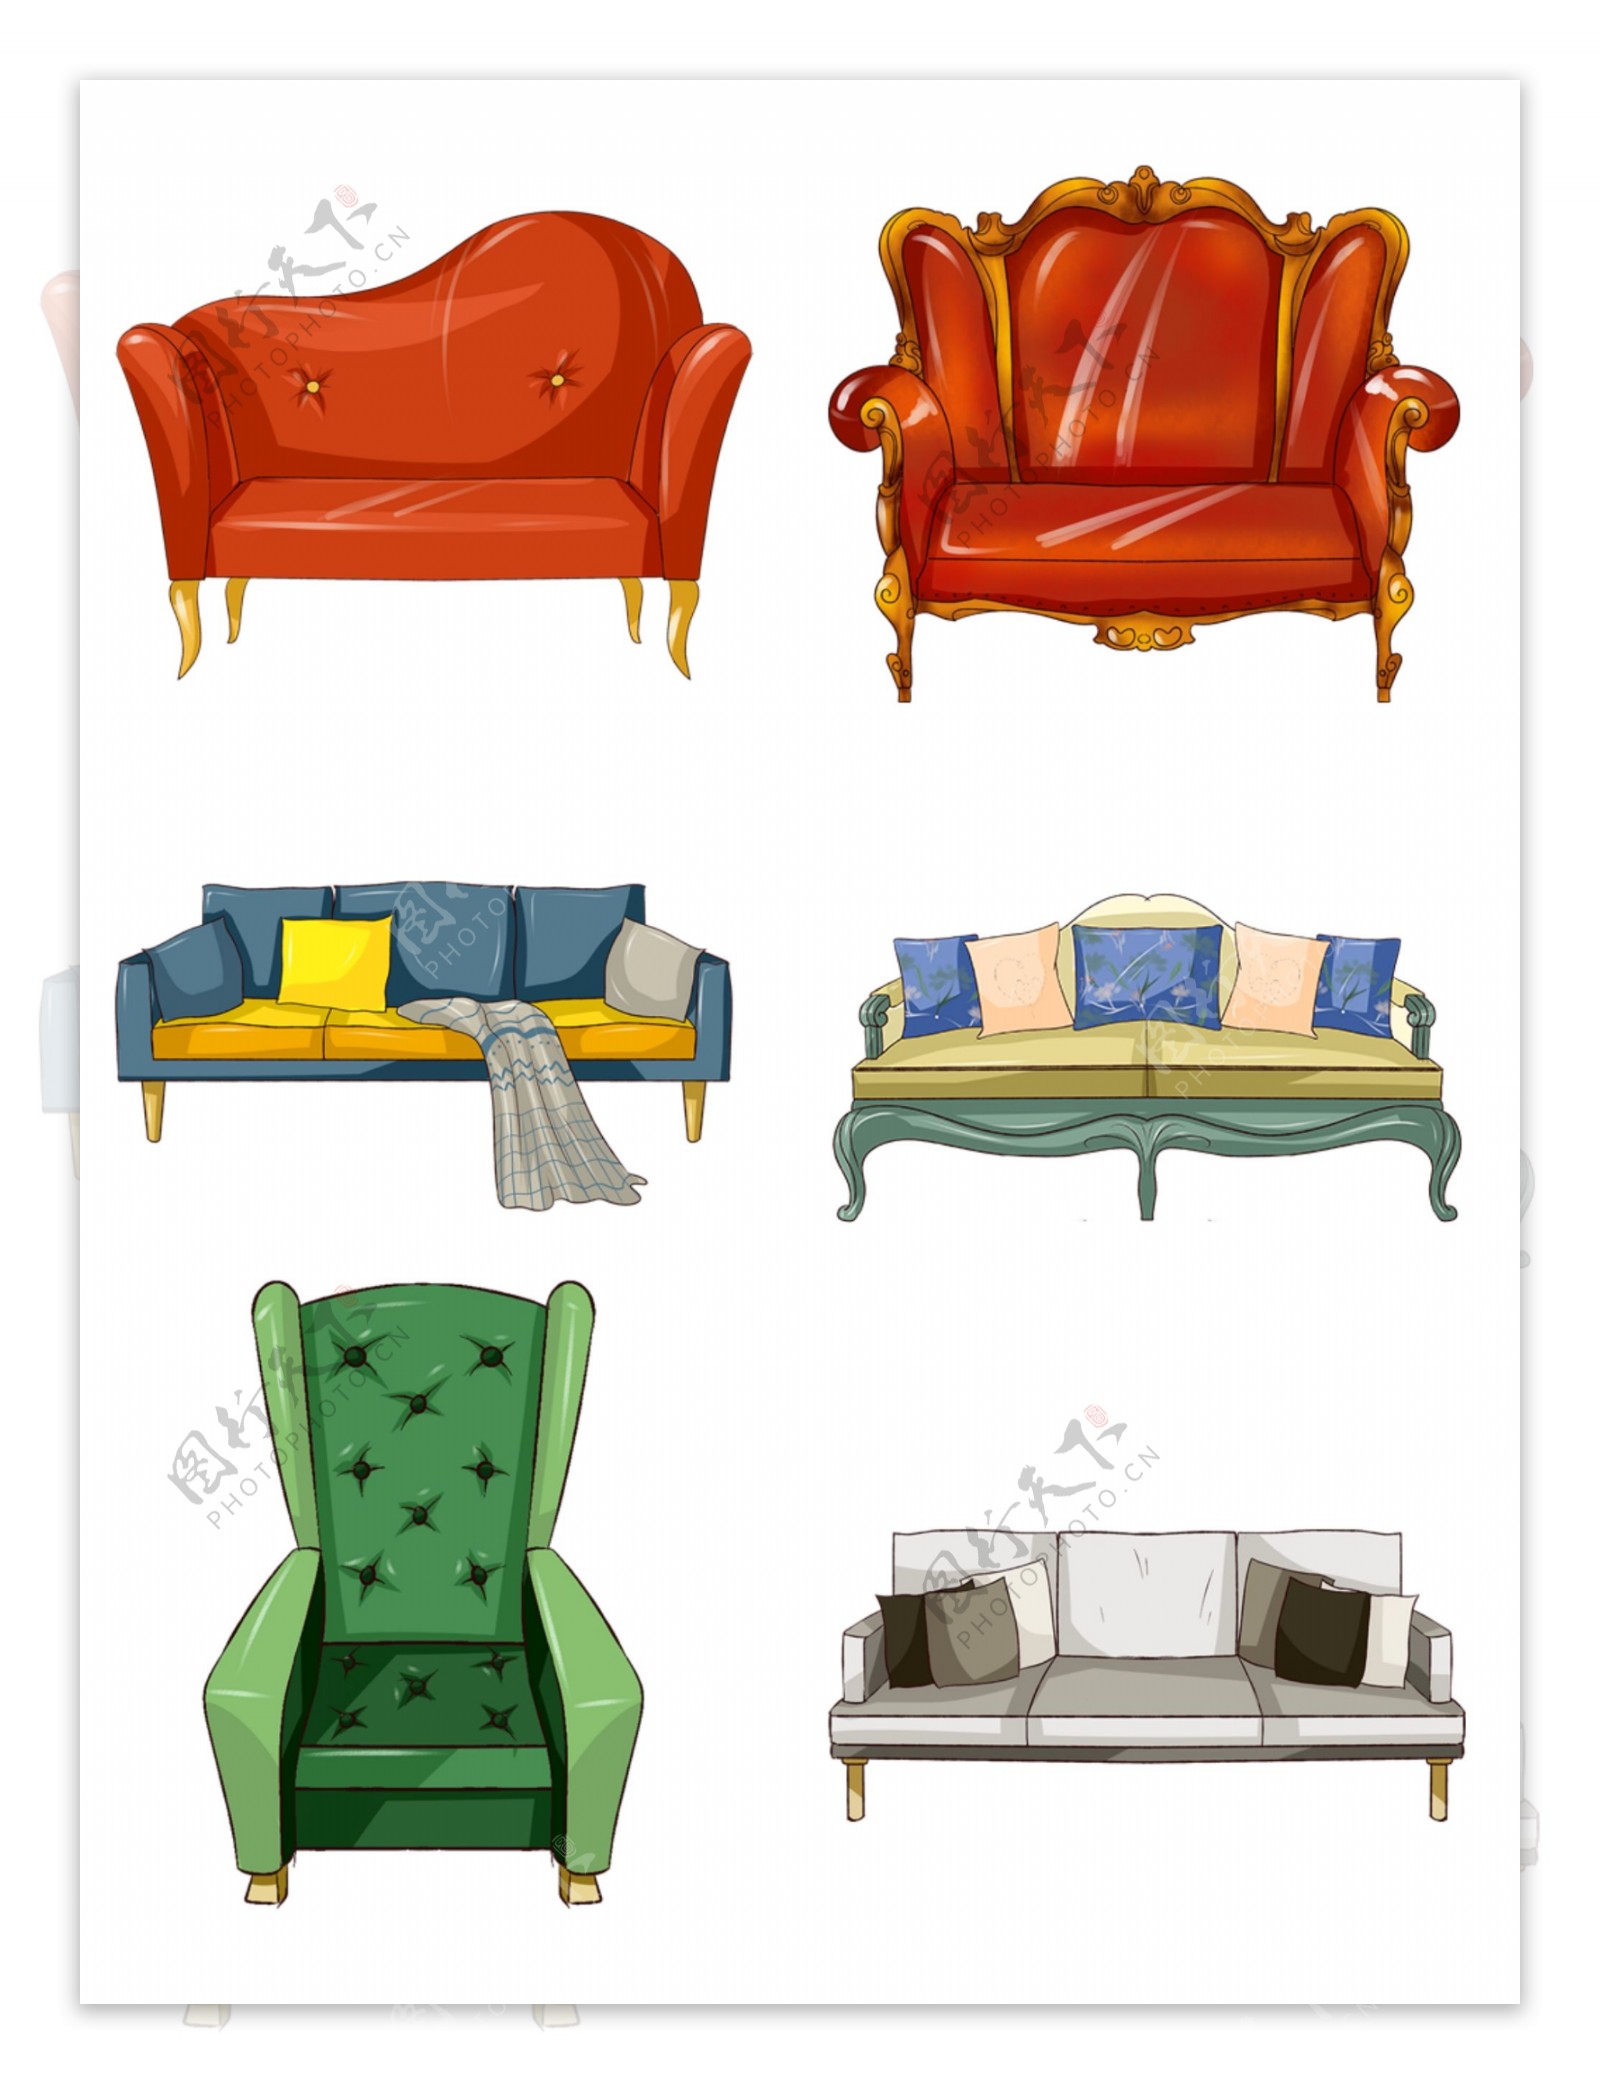 原创手绘家具复古欧式简约沙发绿色棕色组合